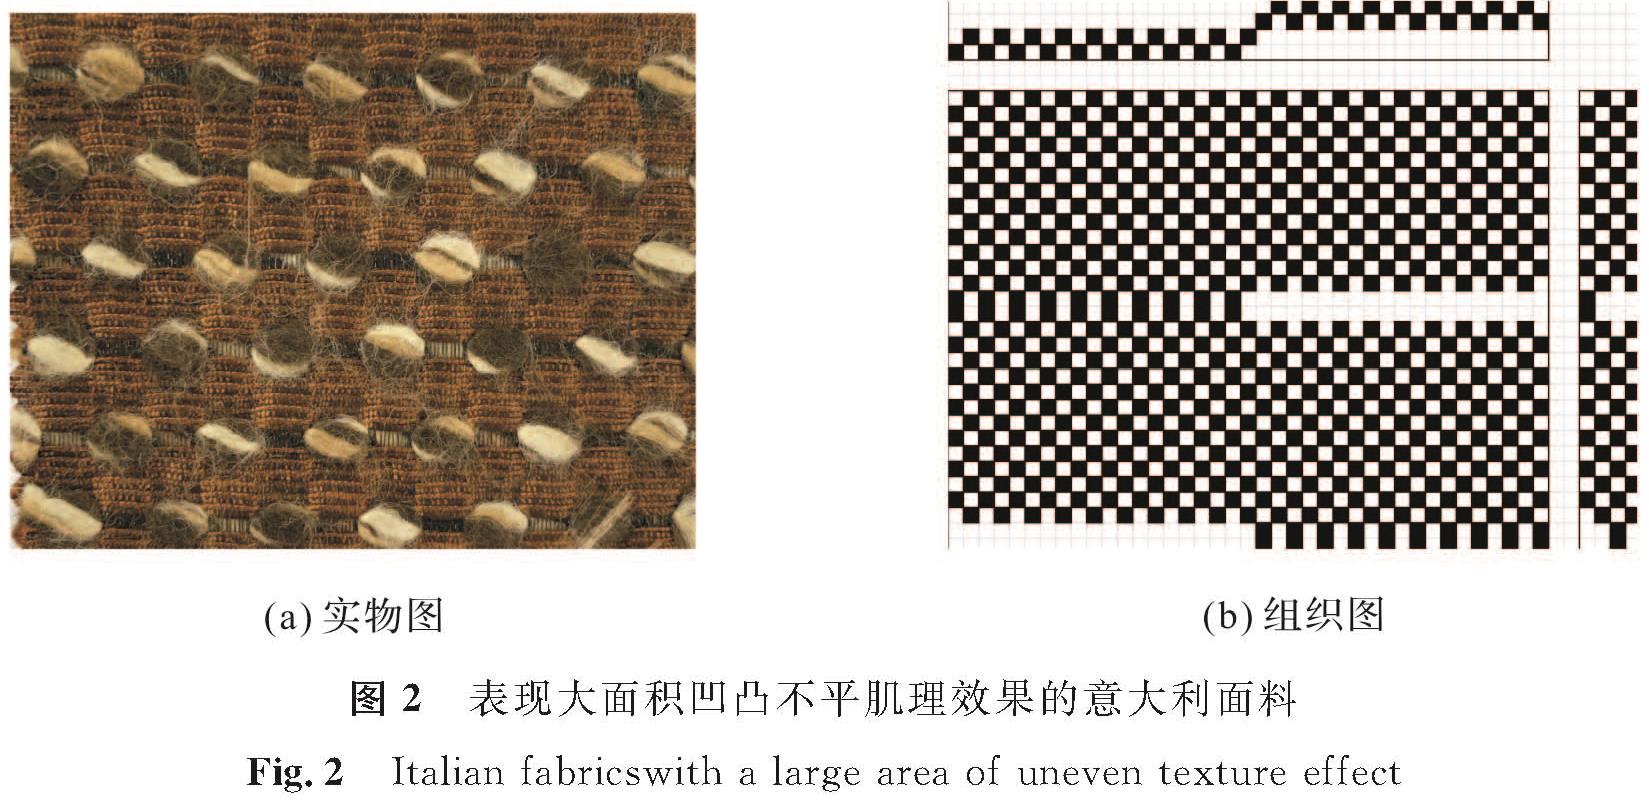 图2 表现大面积凹凸不平肌理效果的意大利面料<br/>Fig.2 Italian fabricswith a large area of uneven texture effect